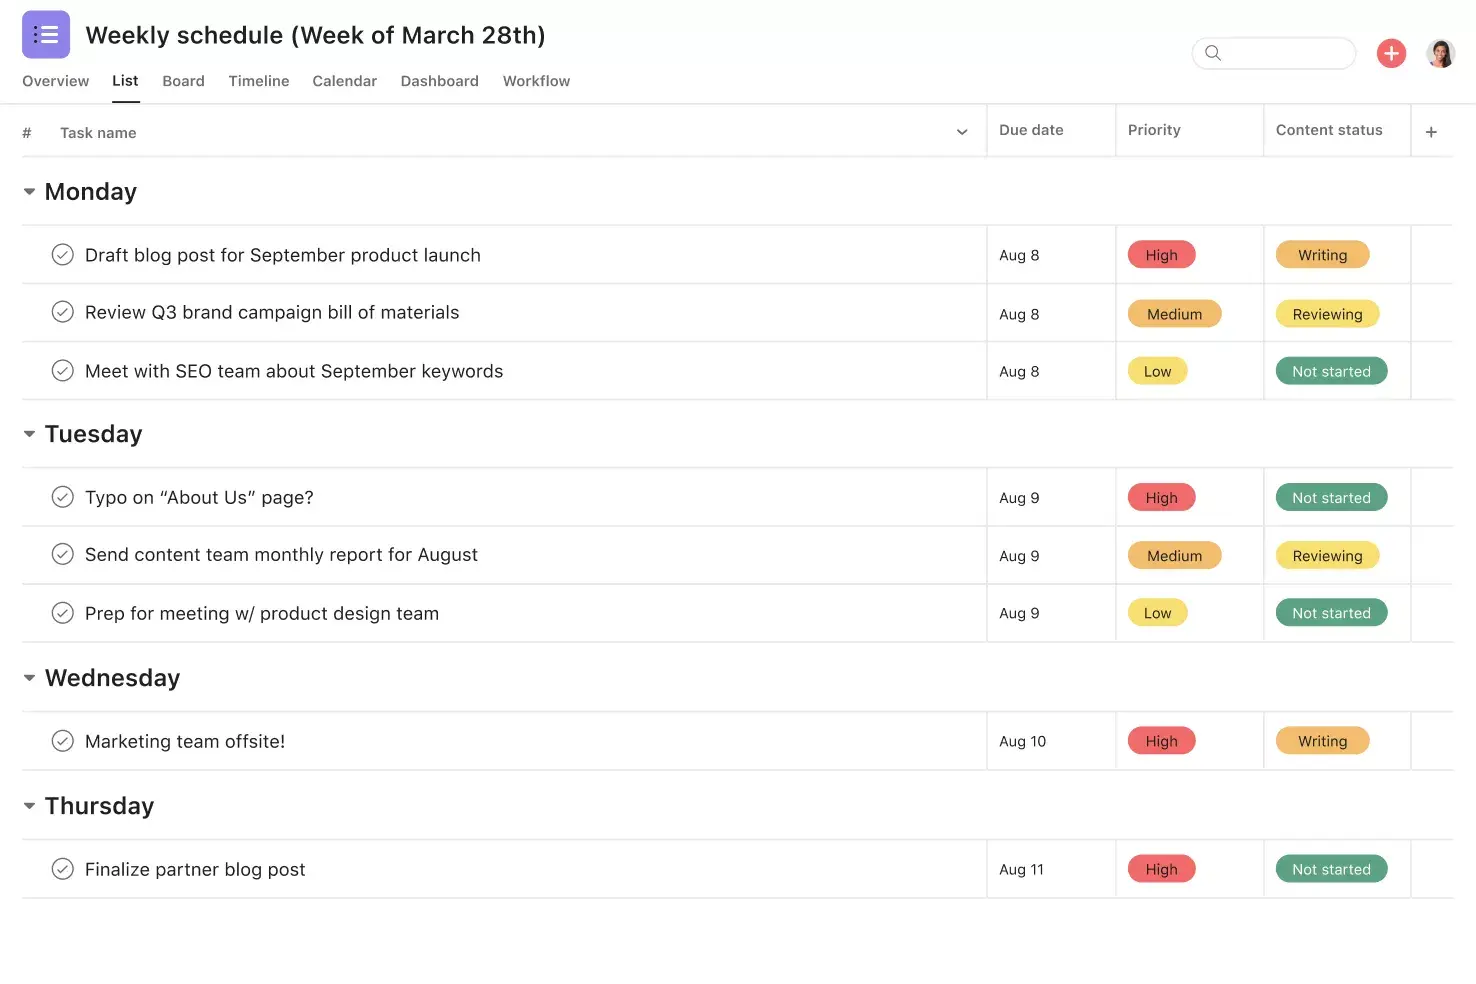 [Interface do produto] Agenda semanal ordenada por prioridade e status (formato de lista)